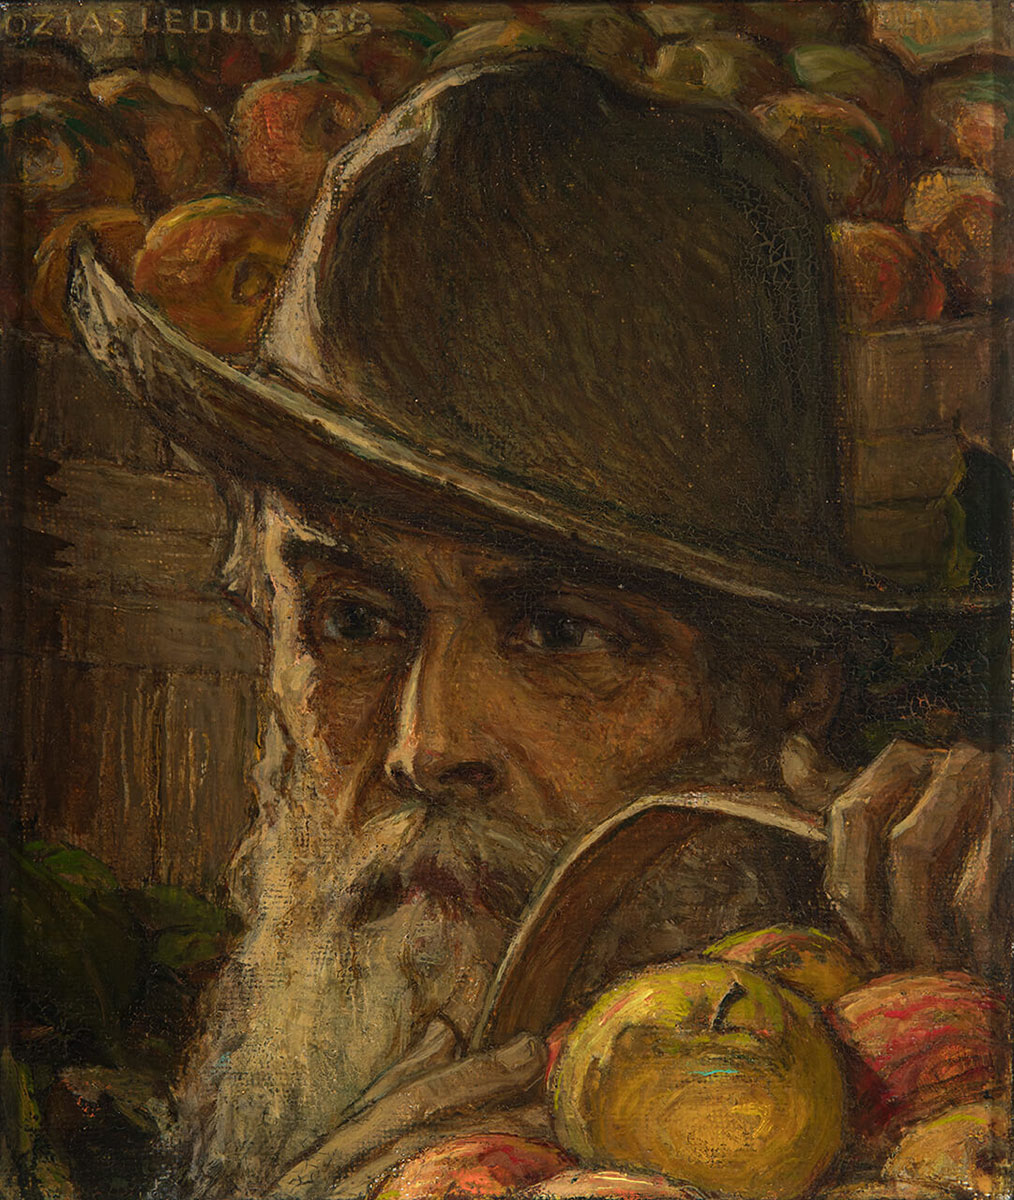 Portrait du père d'ozias Leduc, Antoine, tenant un panier de pommes d'une main, portant un chapeau. Il a une abondante barbe blanche.